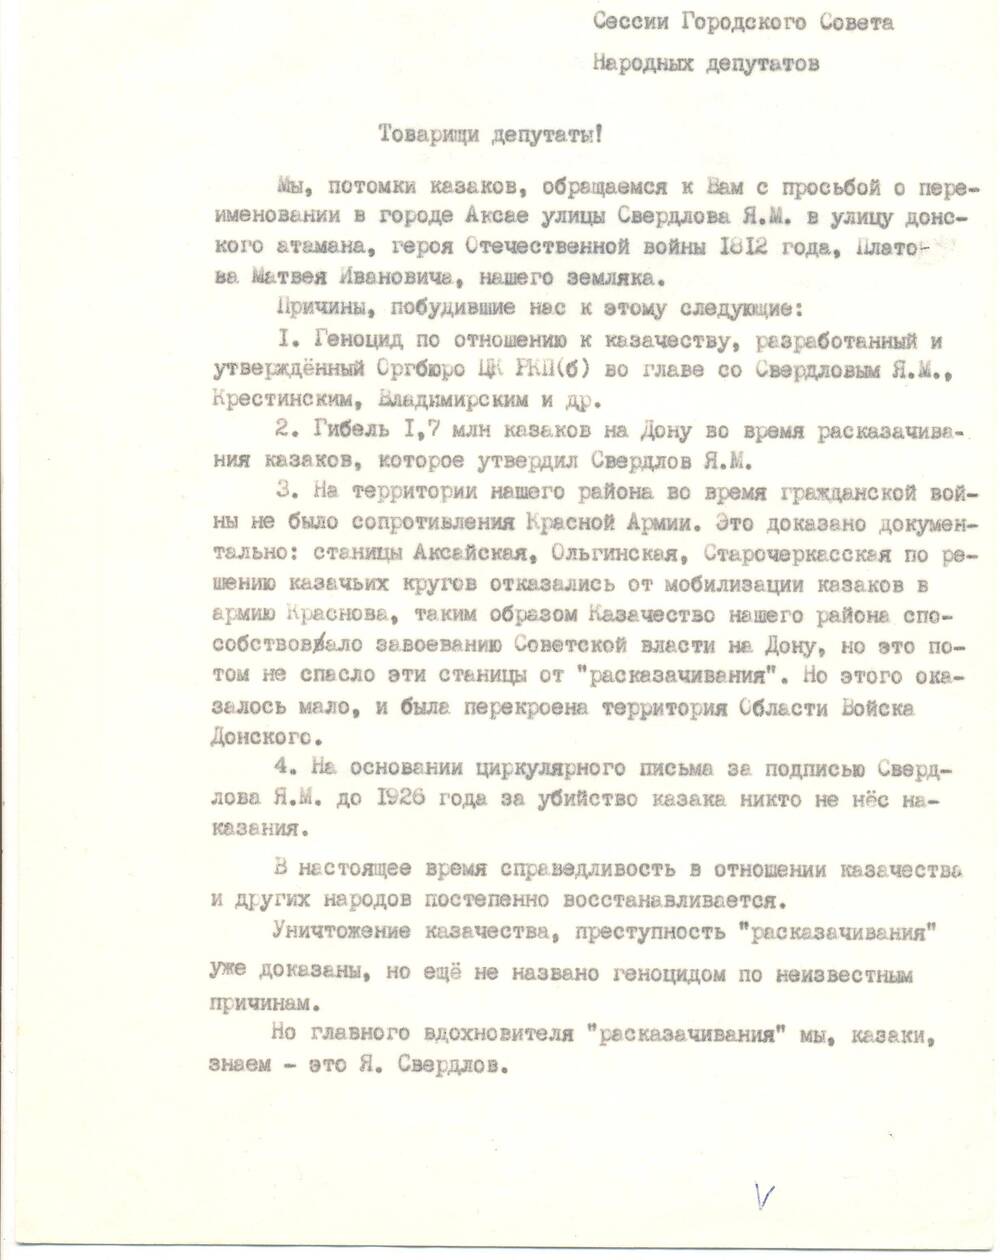 Письмо правления казаков станицы Аксайской.